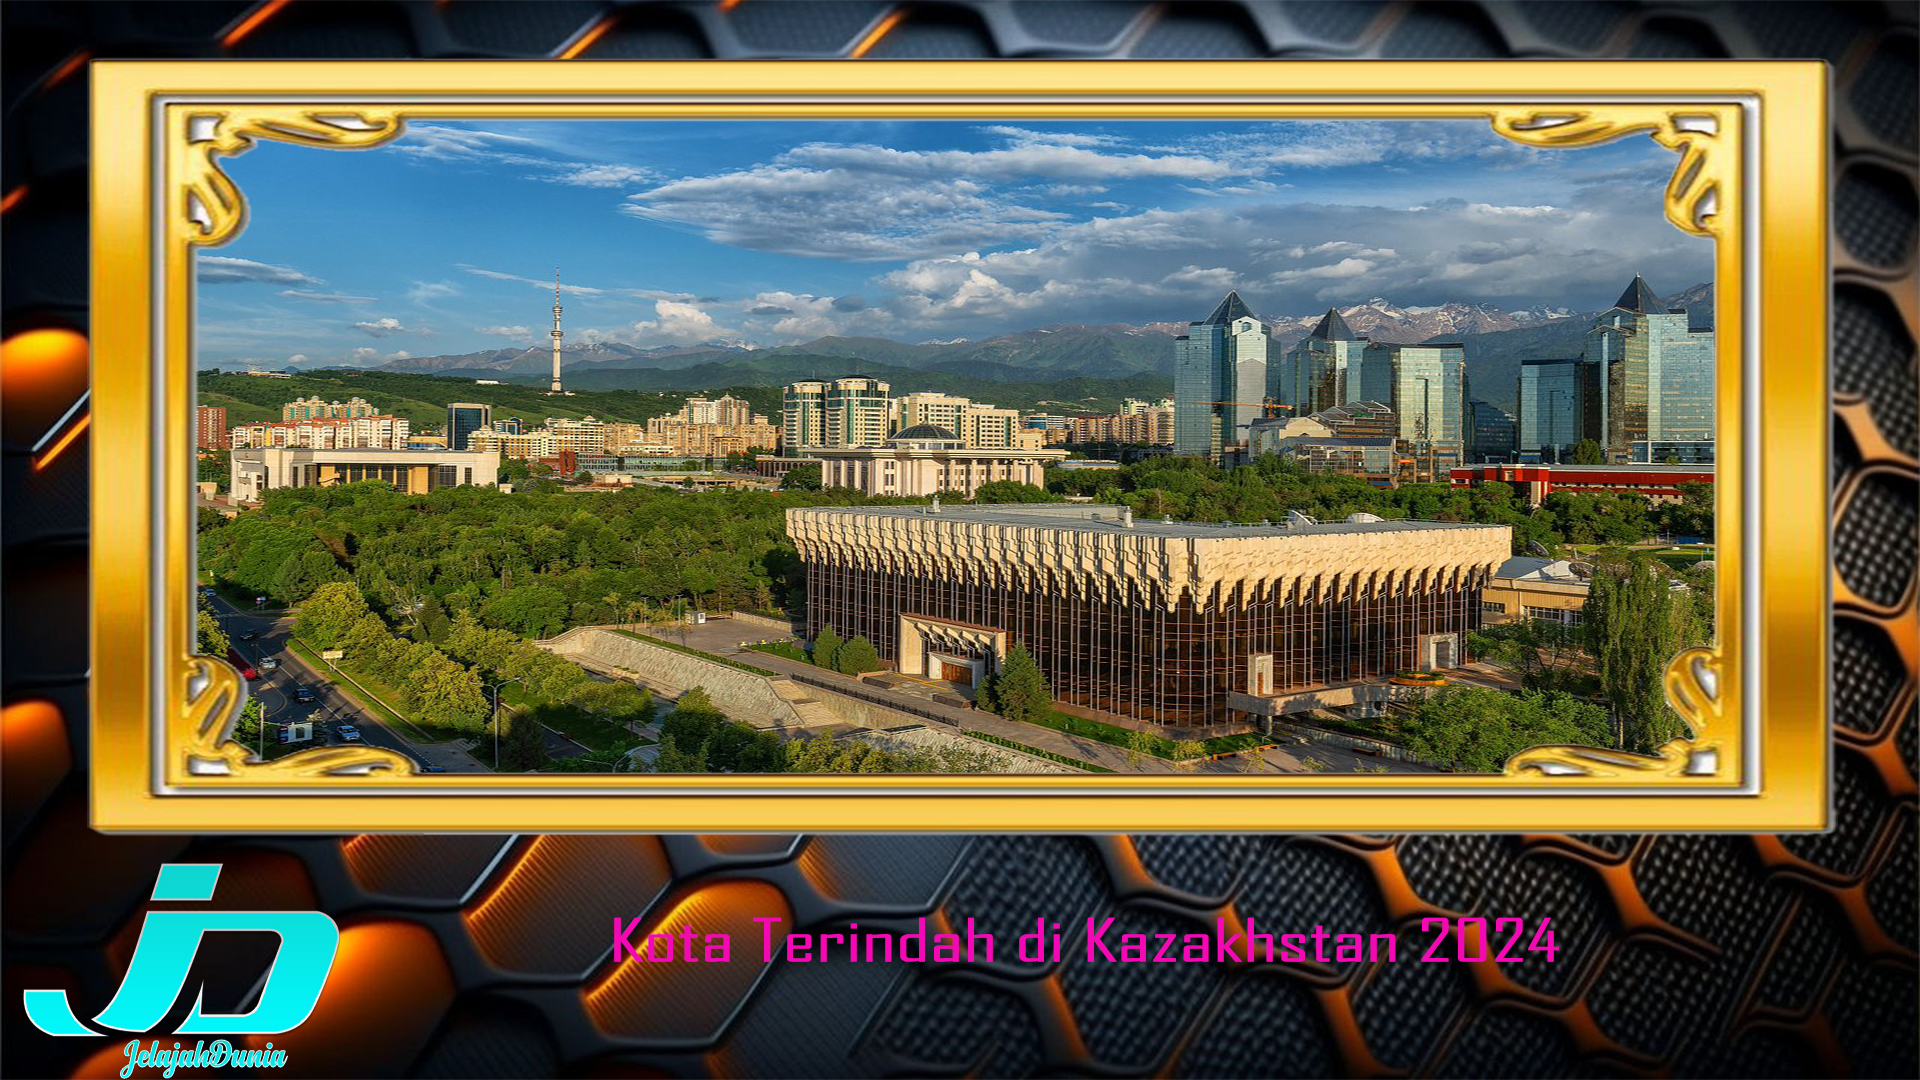 Kota Terindah di Kazakhstan 2024